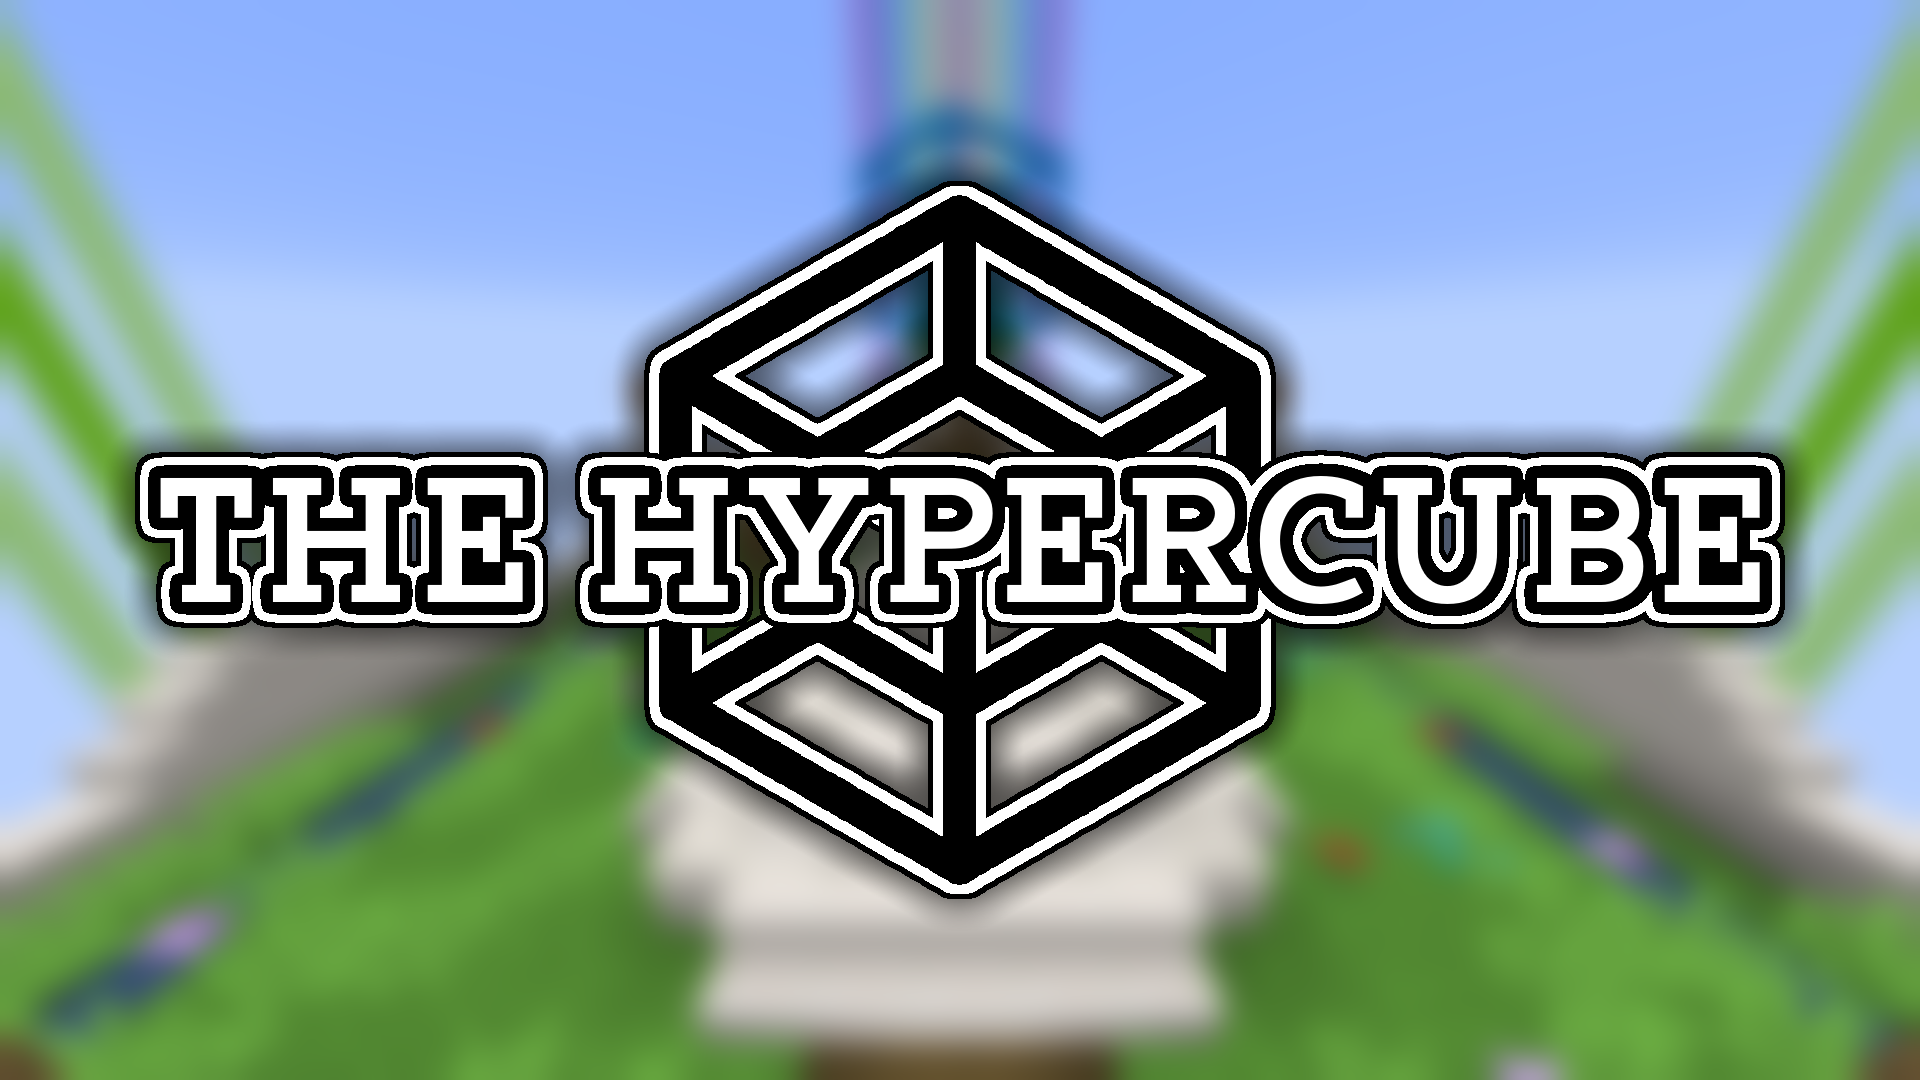 Herunterladen The Hypercube zum Minecraft 1.14